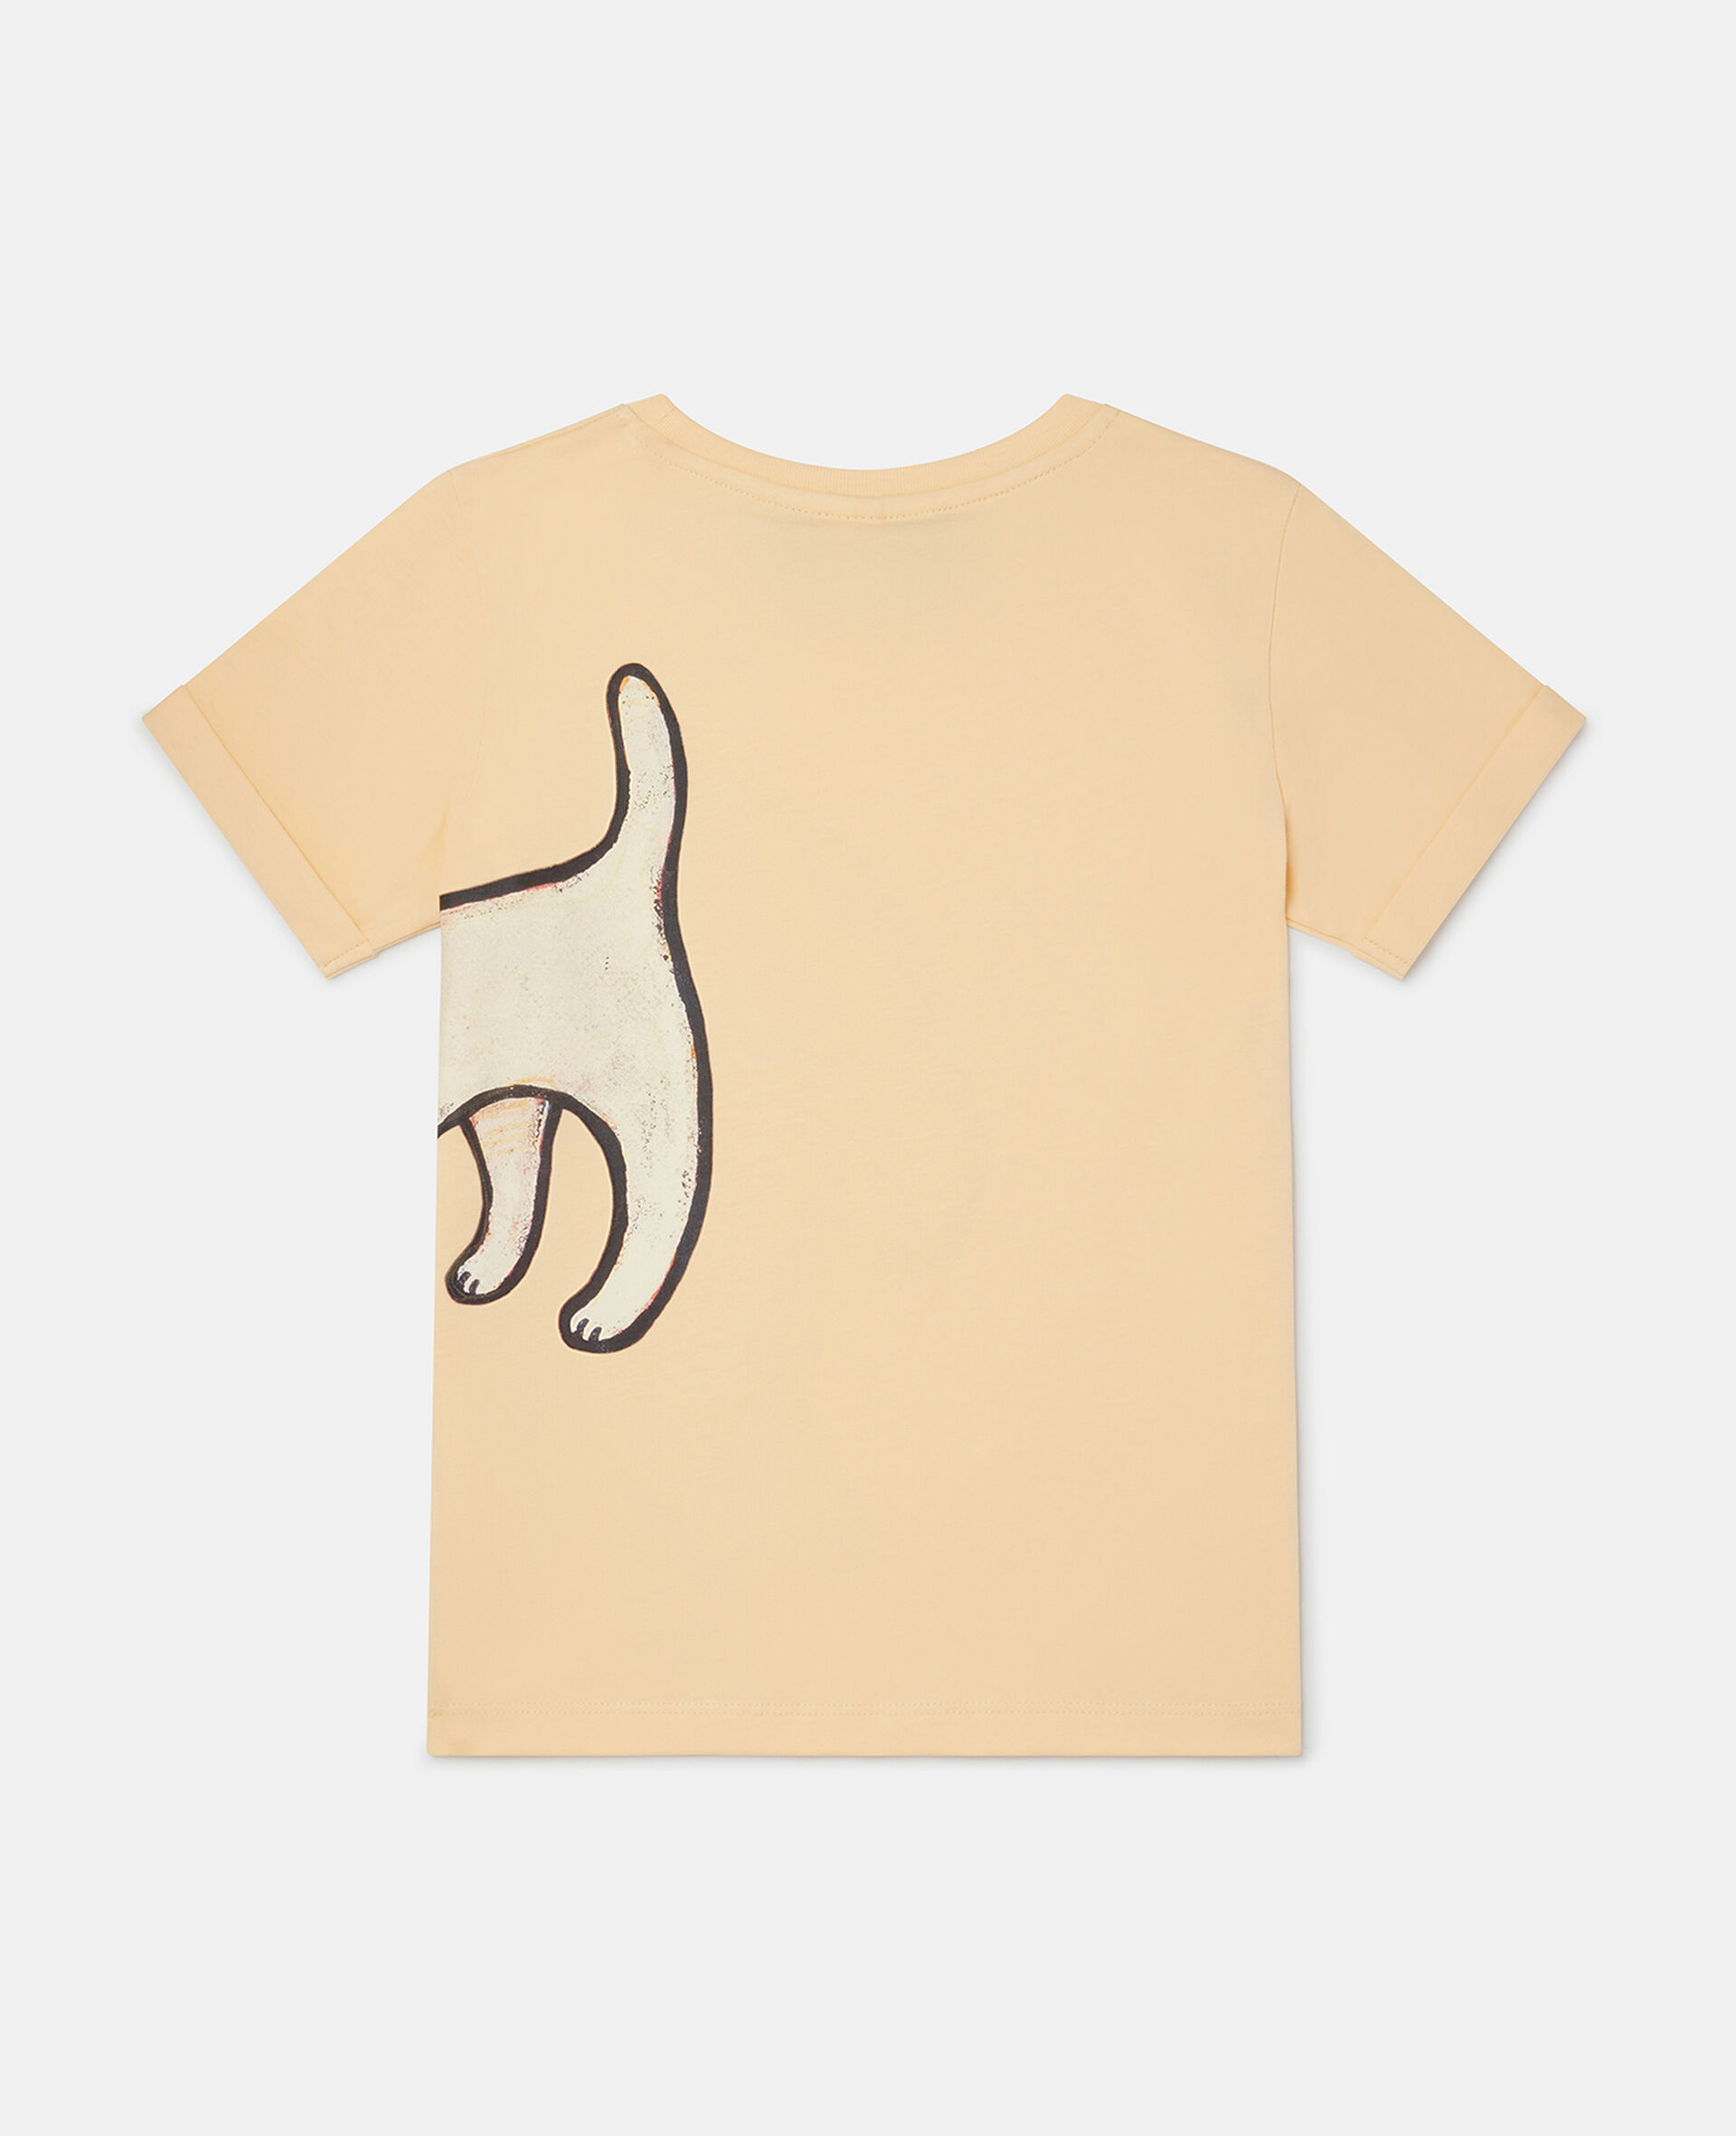 Lonesome Puppy Motif T-Shirt-Orange-large image number 1